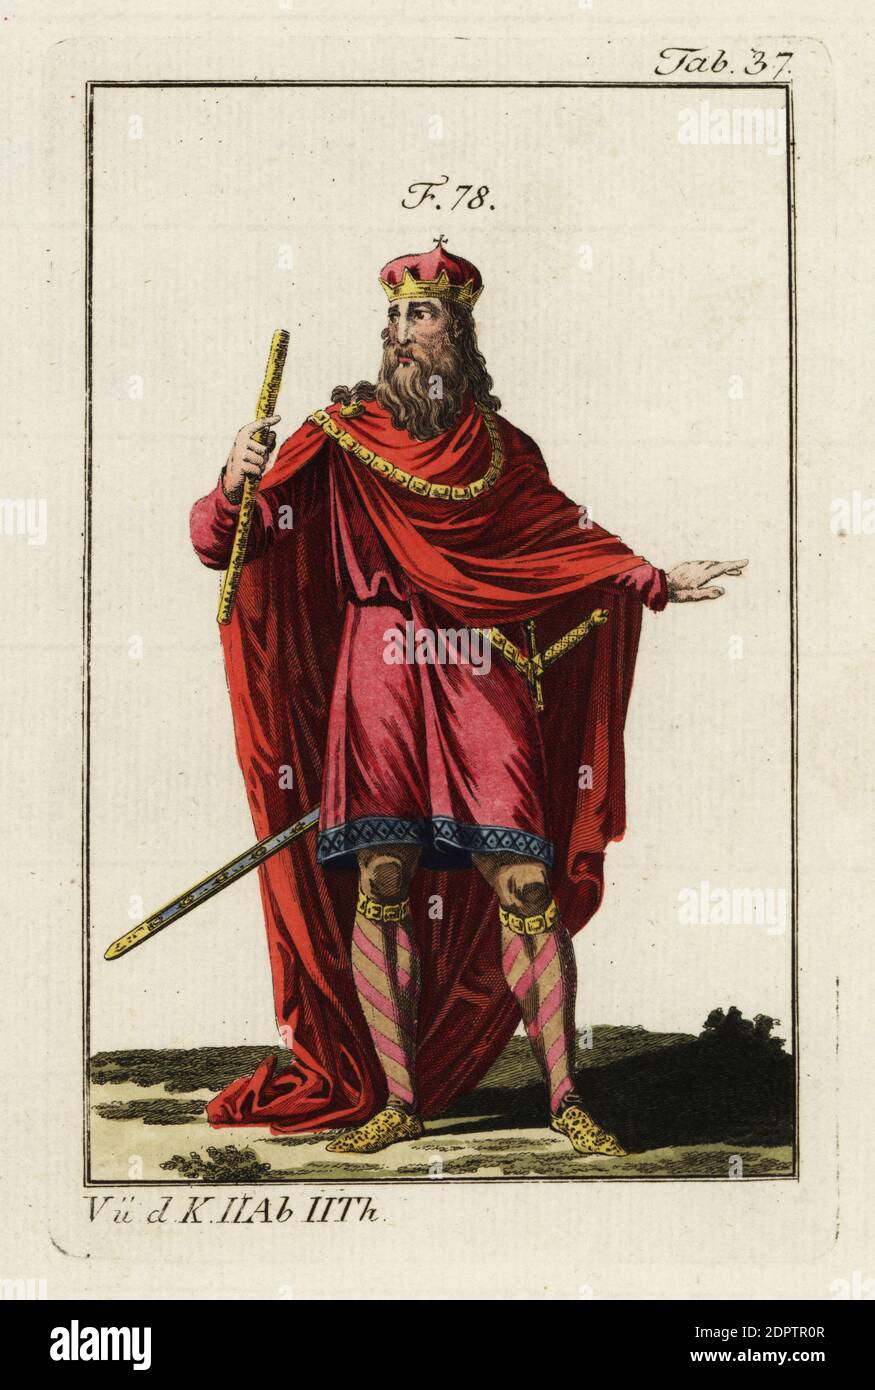 Charlemagne (742 à 814) fut roi des Francs de 768 à sa mort. Il est  également connu sous le nom de Charles I, Karl der grosse d'Allemagne et  Carolus Magnus du Saint